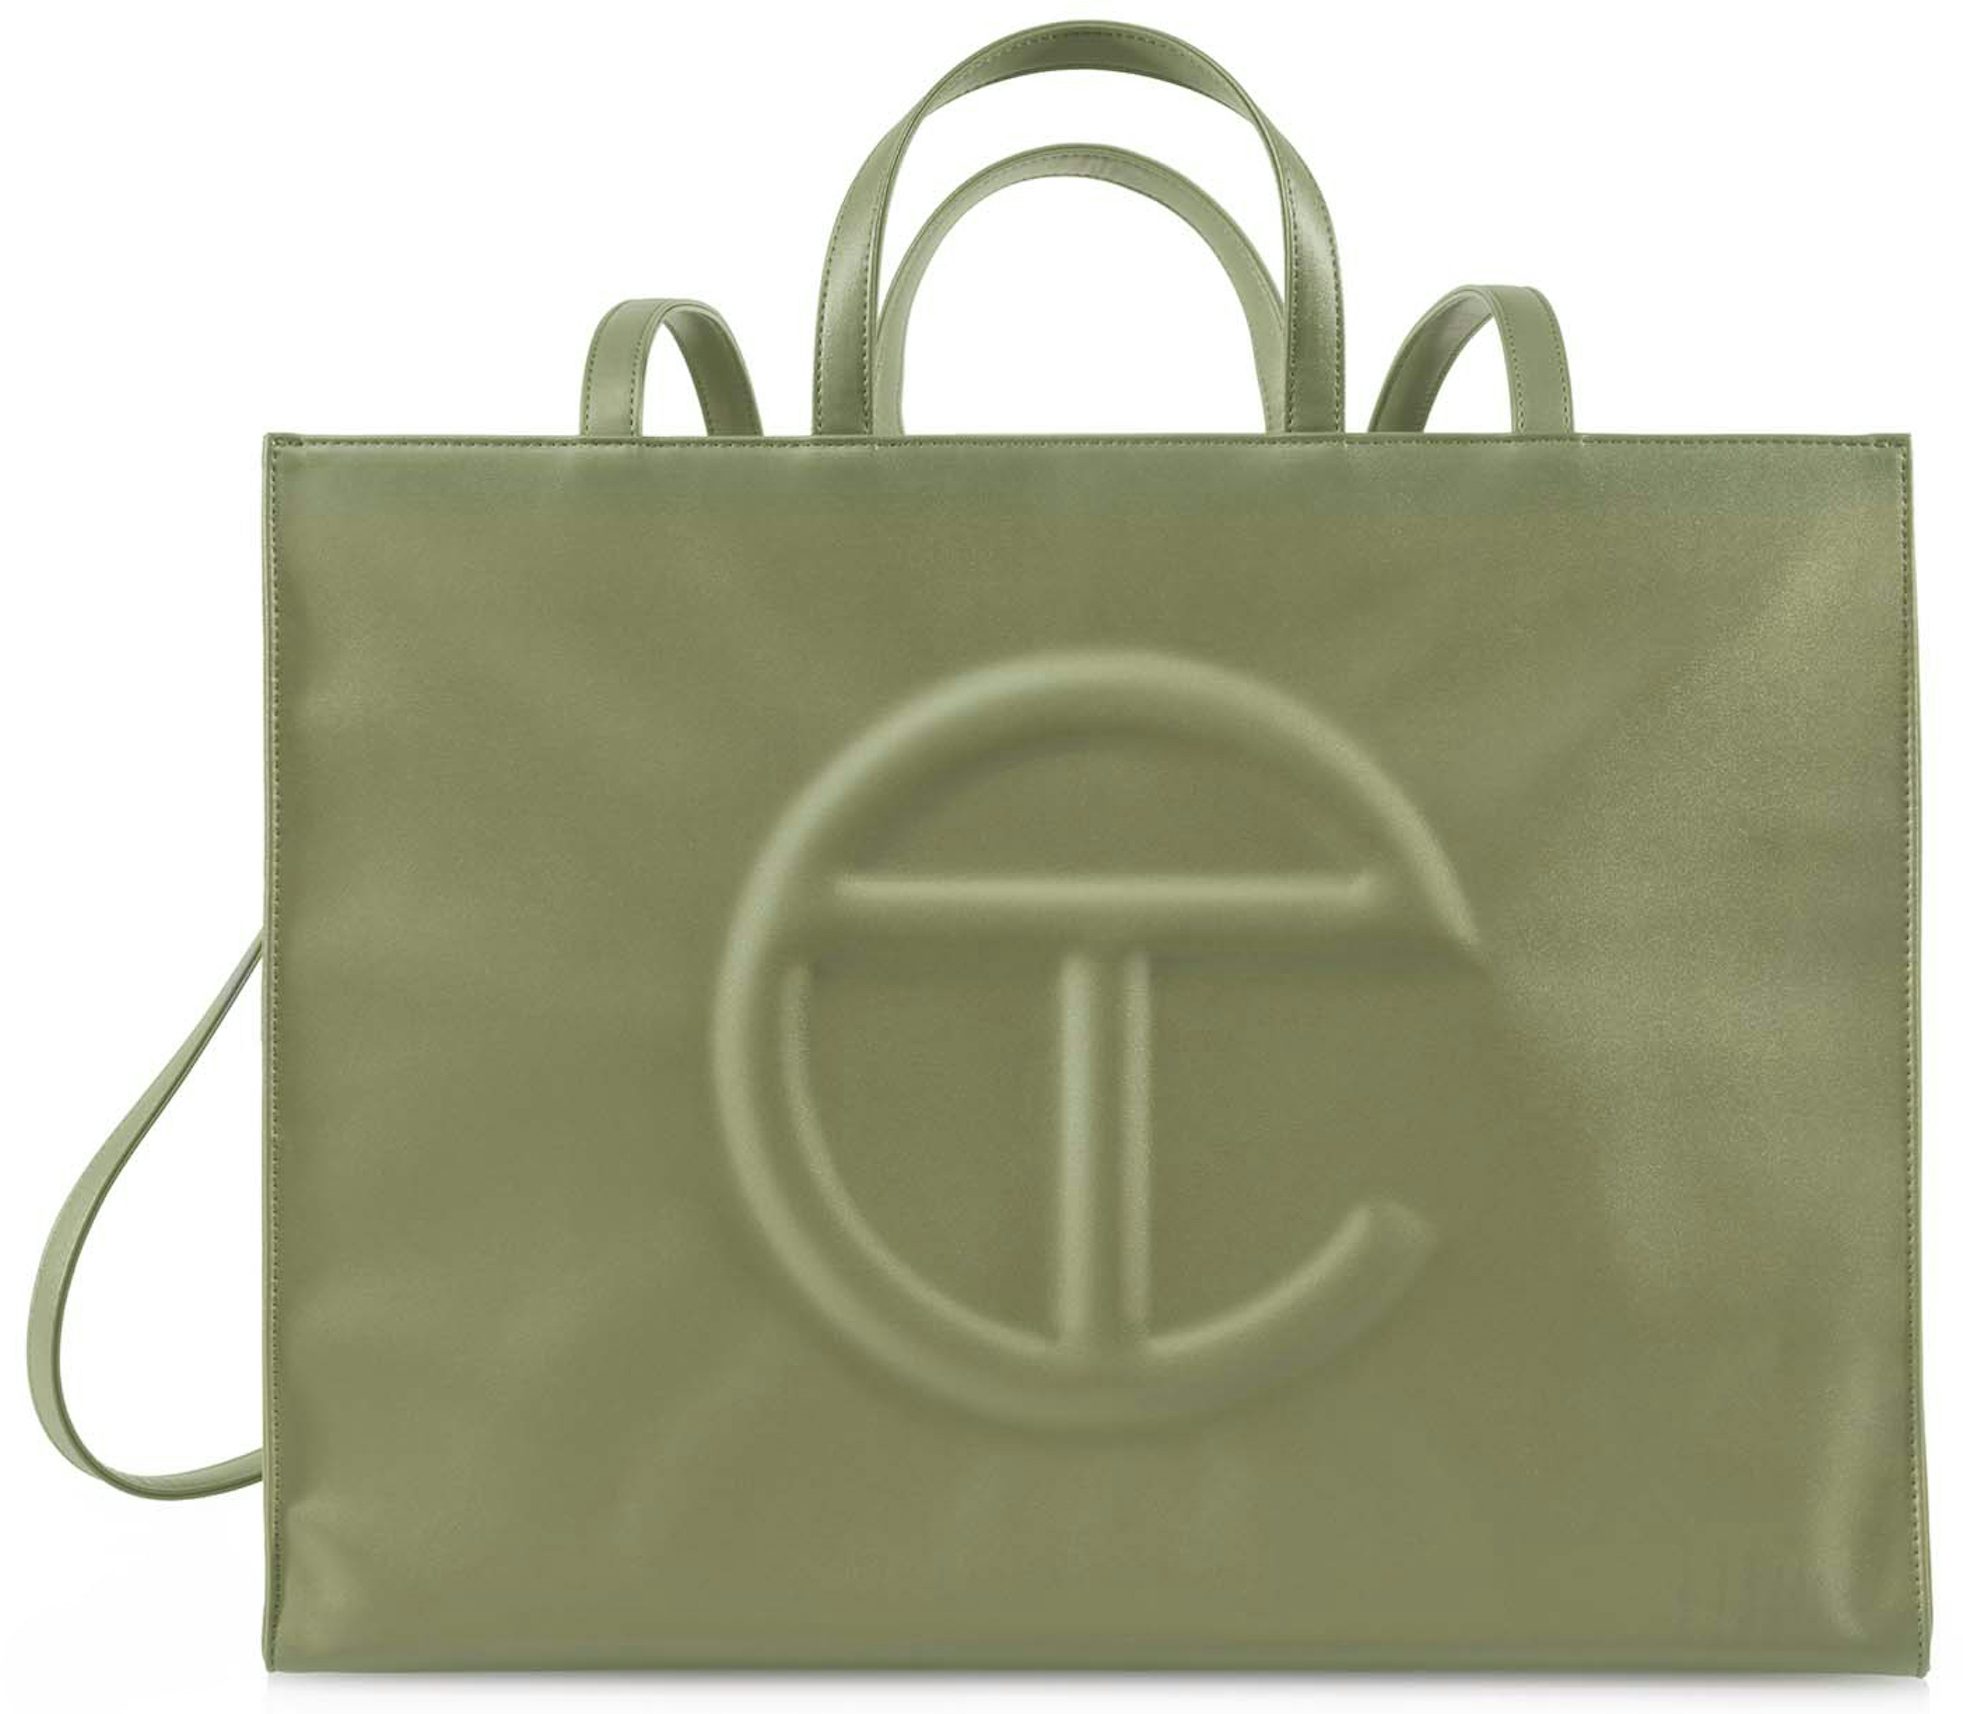 Telfar Large Navy Shopping Bag